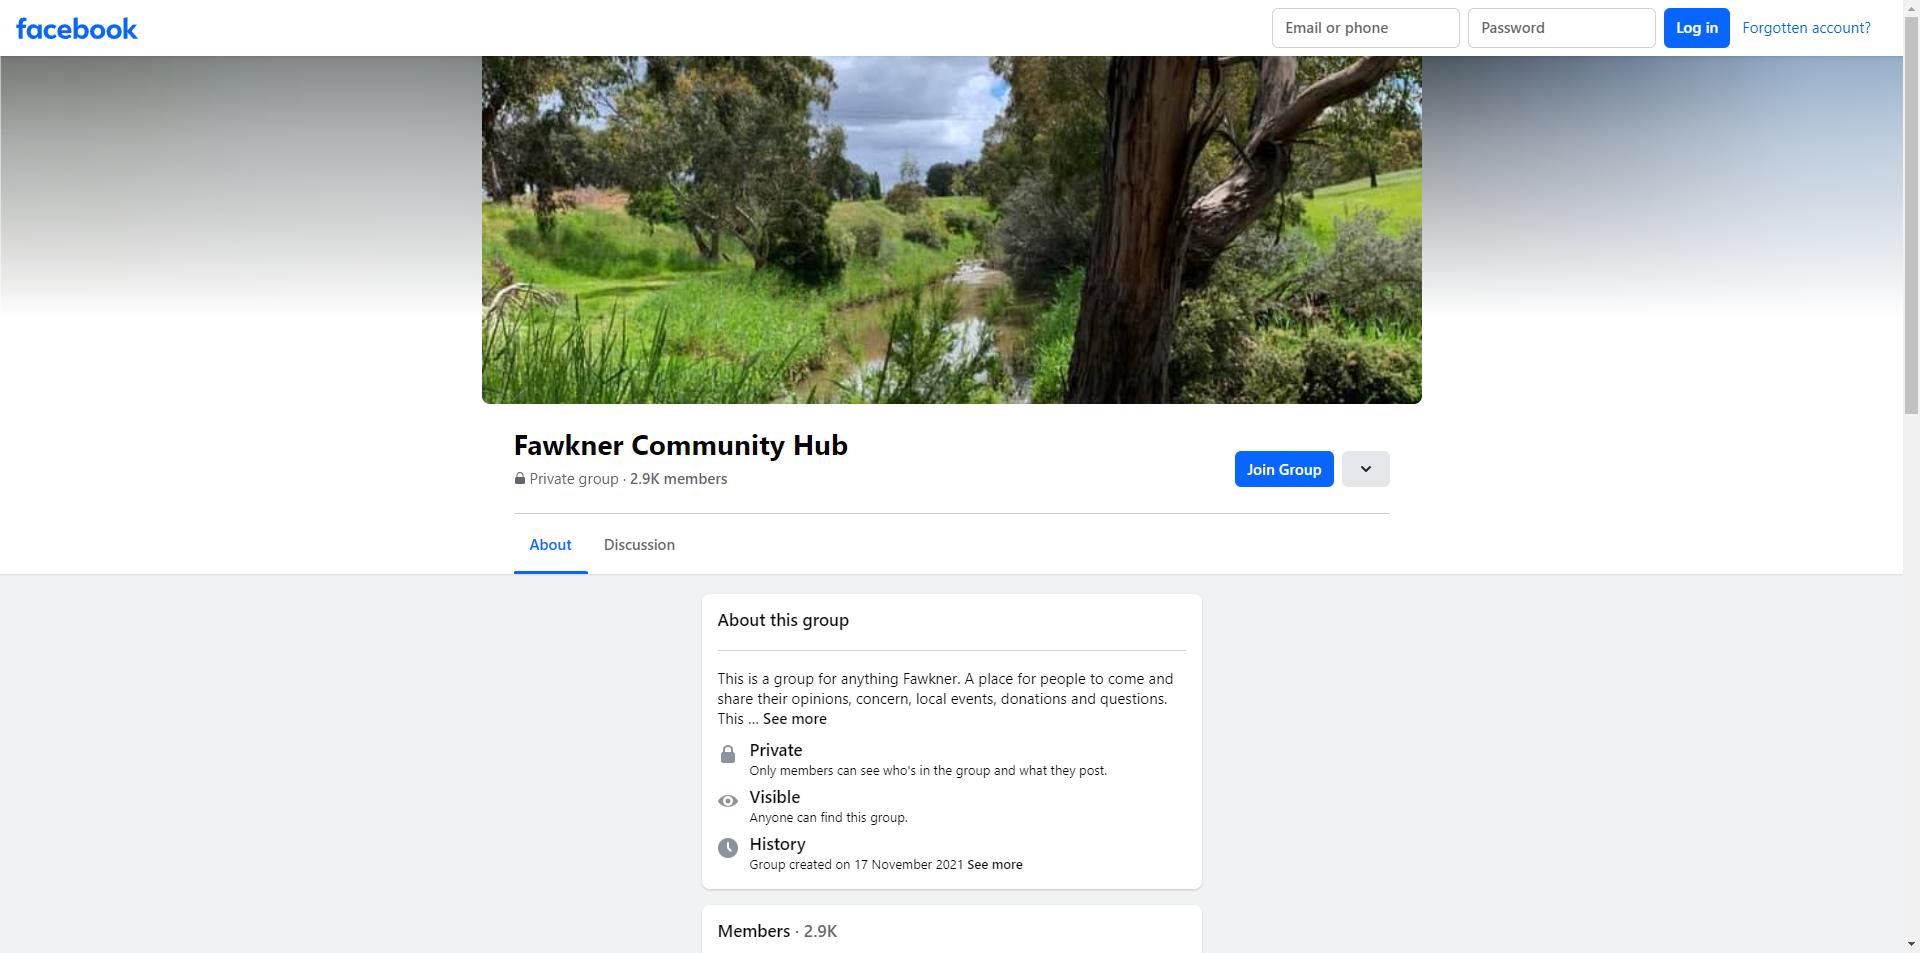 Fawkner Community Hub